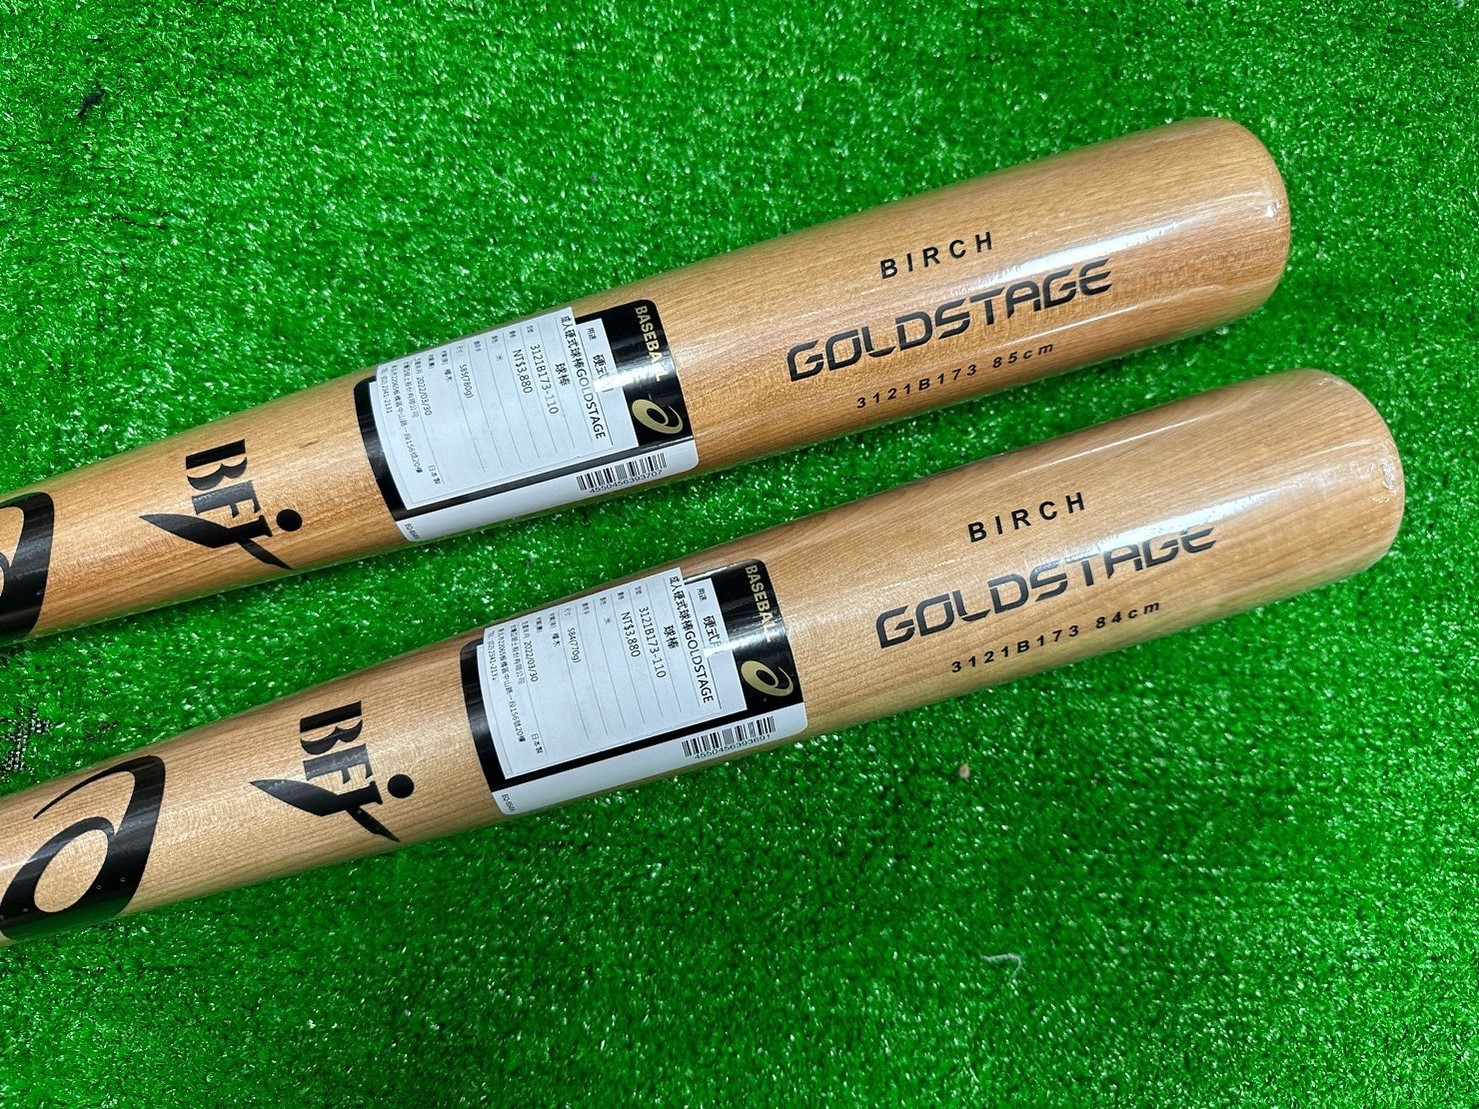 新莊新太陽asics 亞瑟士GOLD STAGE 3121B173 110 日製硬式黃樺木棒球棒 